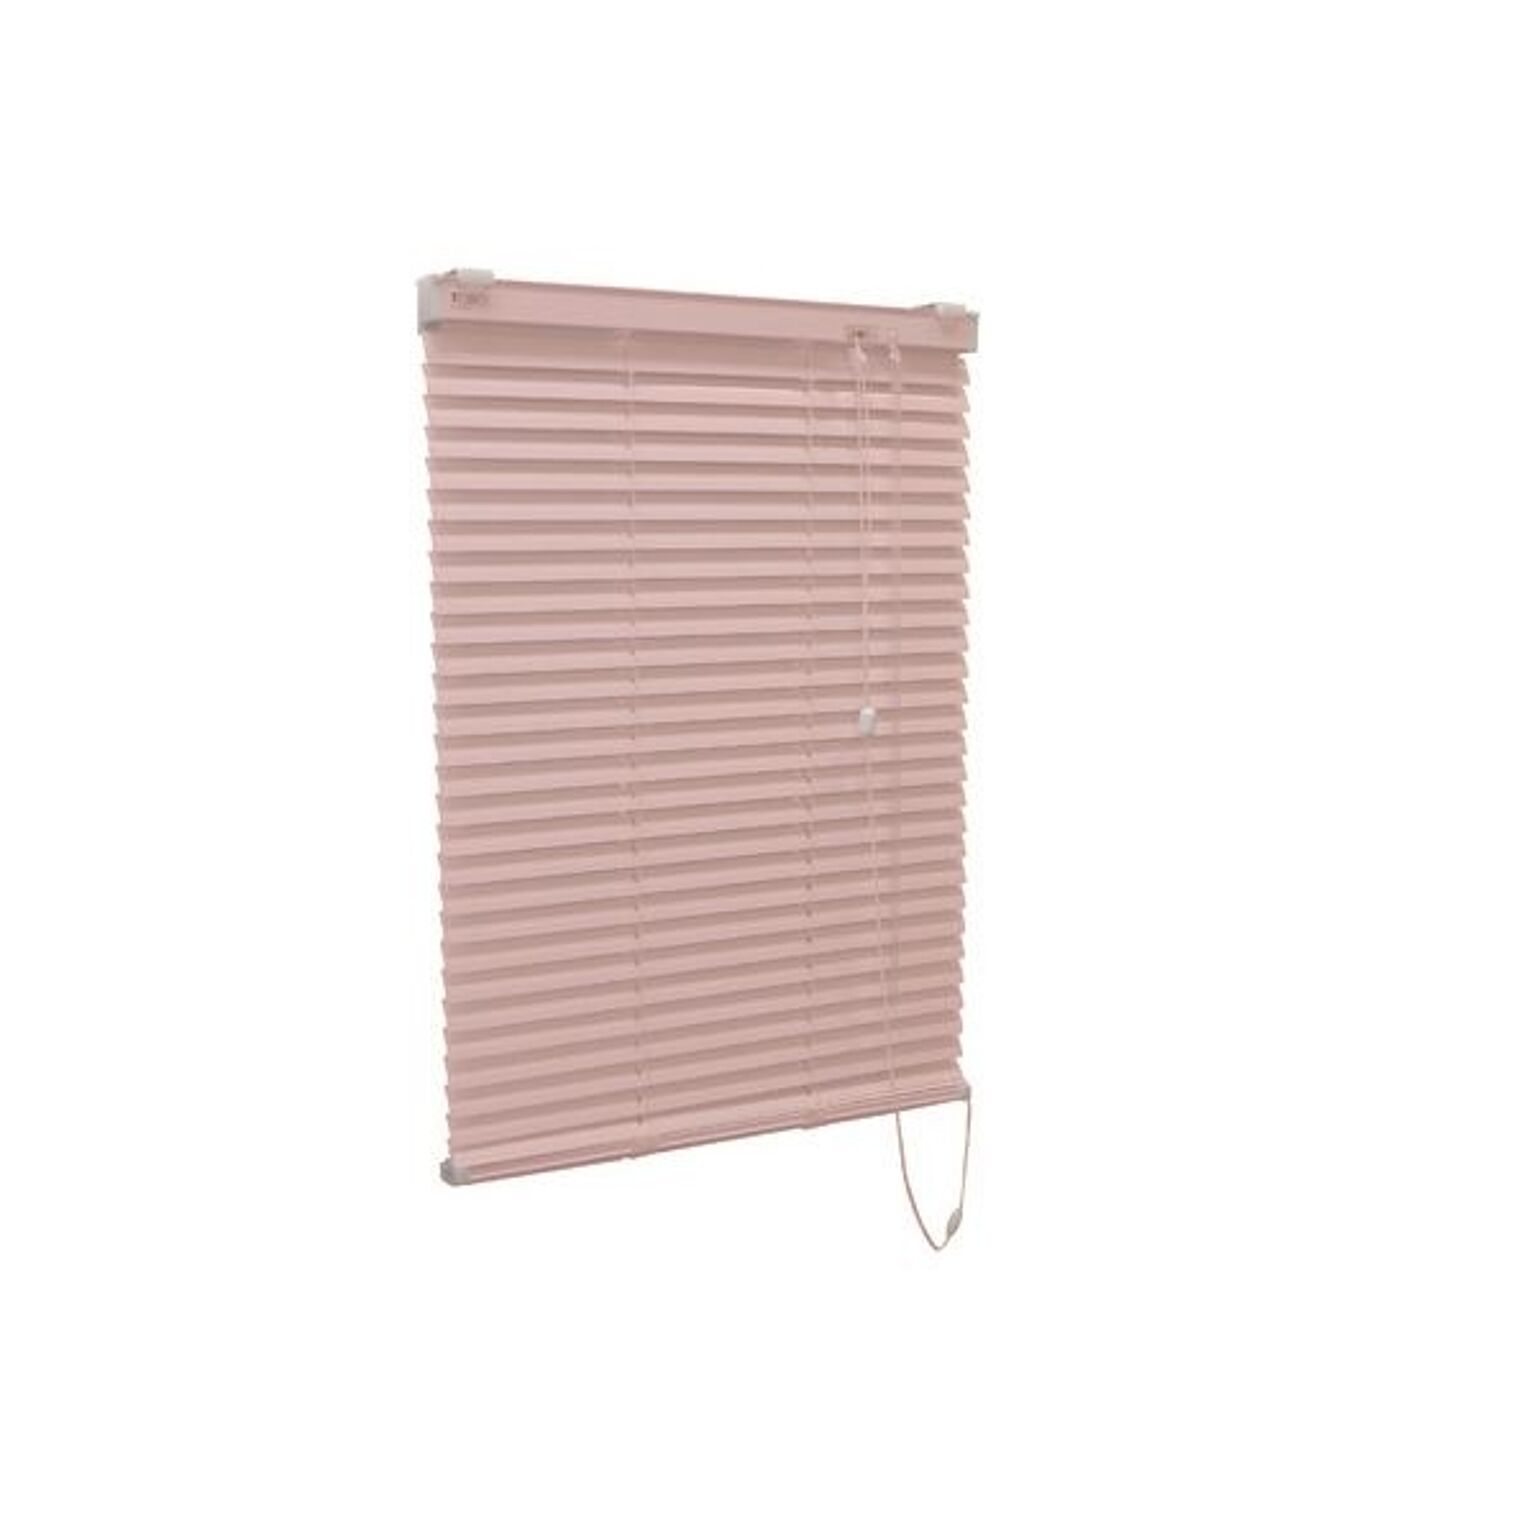 アルミ製 ブラインド 【178cm×183cm ピンク】 日本製 折れにくい 光量調節 熱効率向上 『ティオリオ』【代引不可】